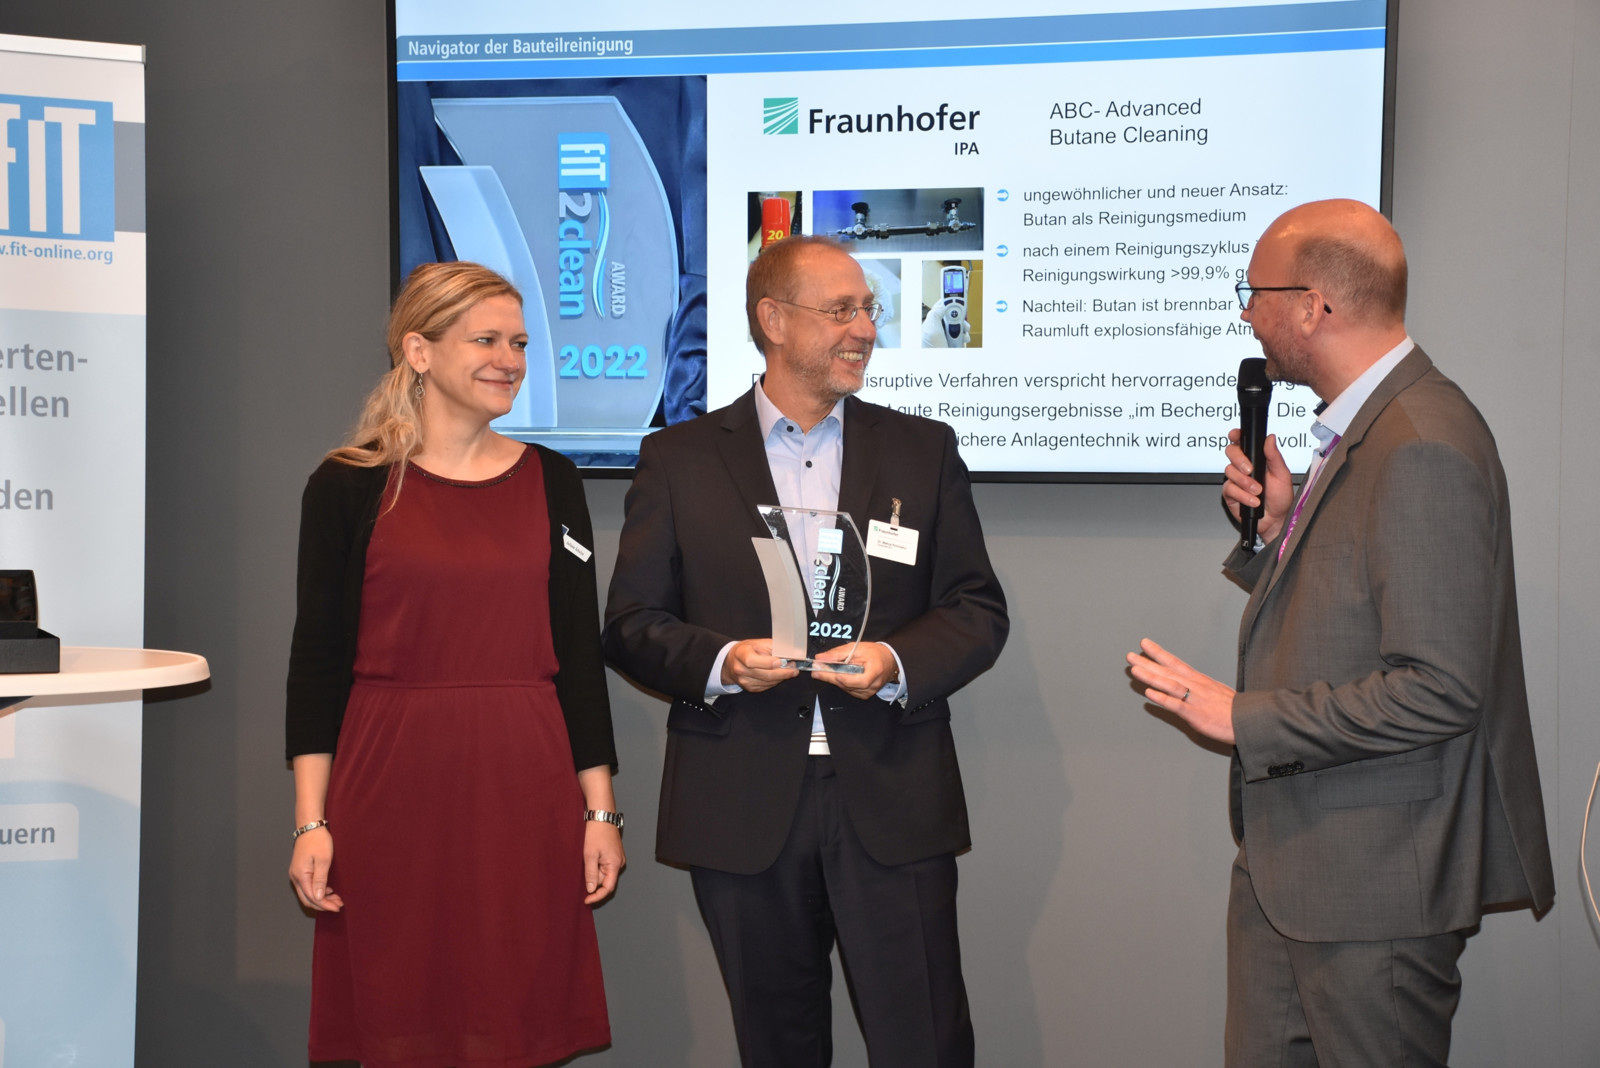 Mit Freude nahm Dr. Markus Rochowicz den ersten FIT 2 Clean-Award für die Innovation Advanced Butane Cleaning von Juliane Schulze und Dr. Michael Flämmich entgegen.